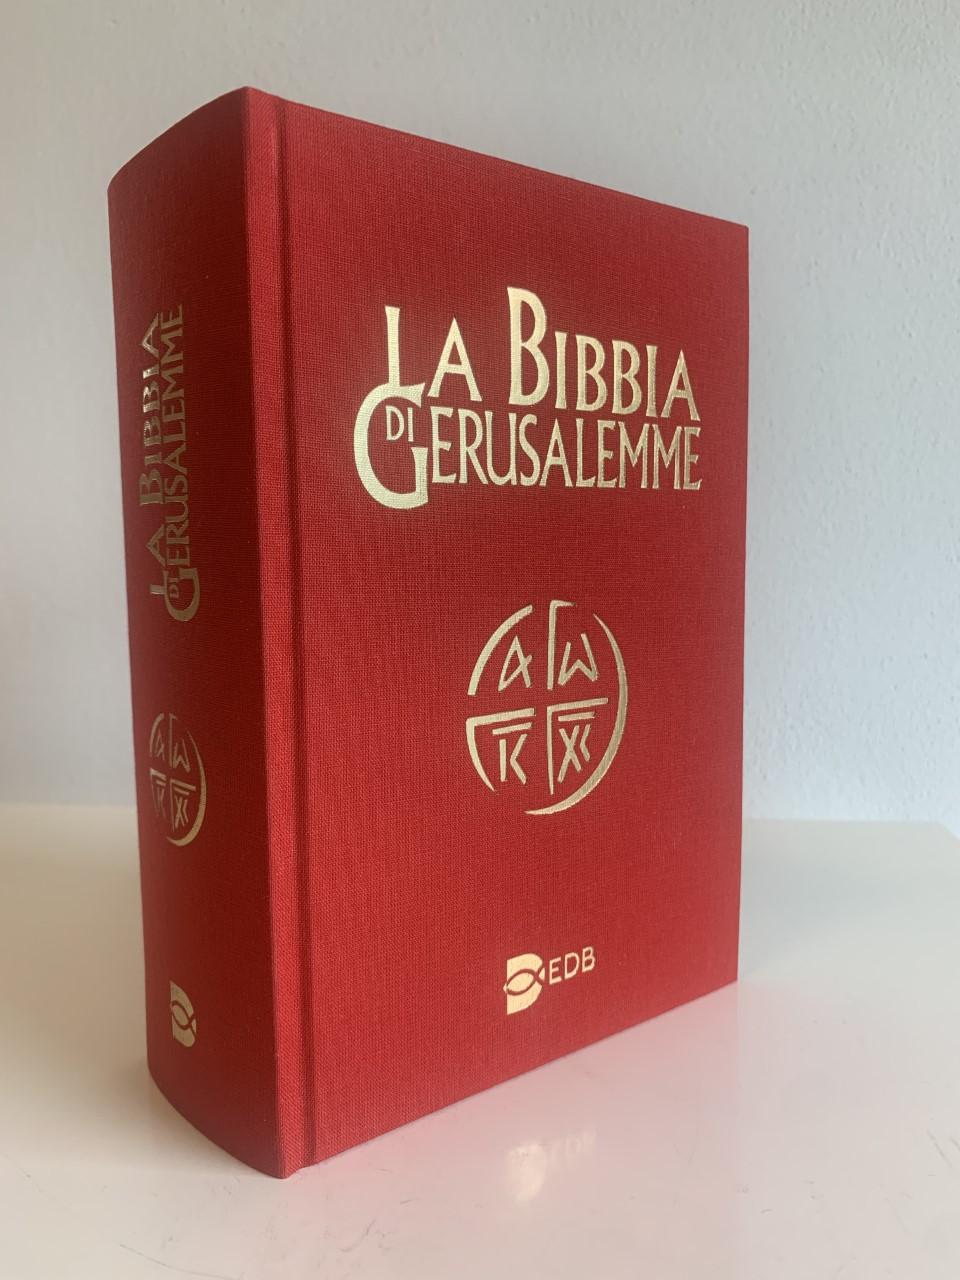 La Bibbia di Gerusalemme - Edizione in tela rossa con cofanetto